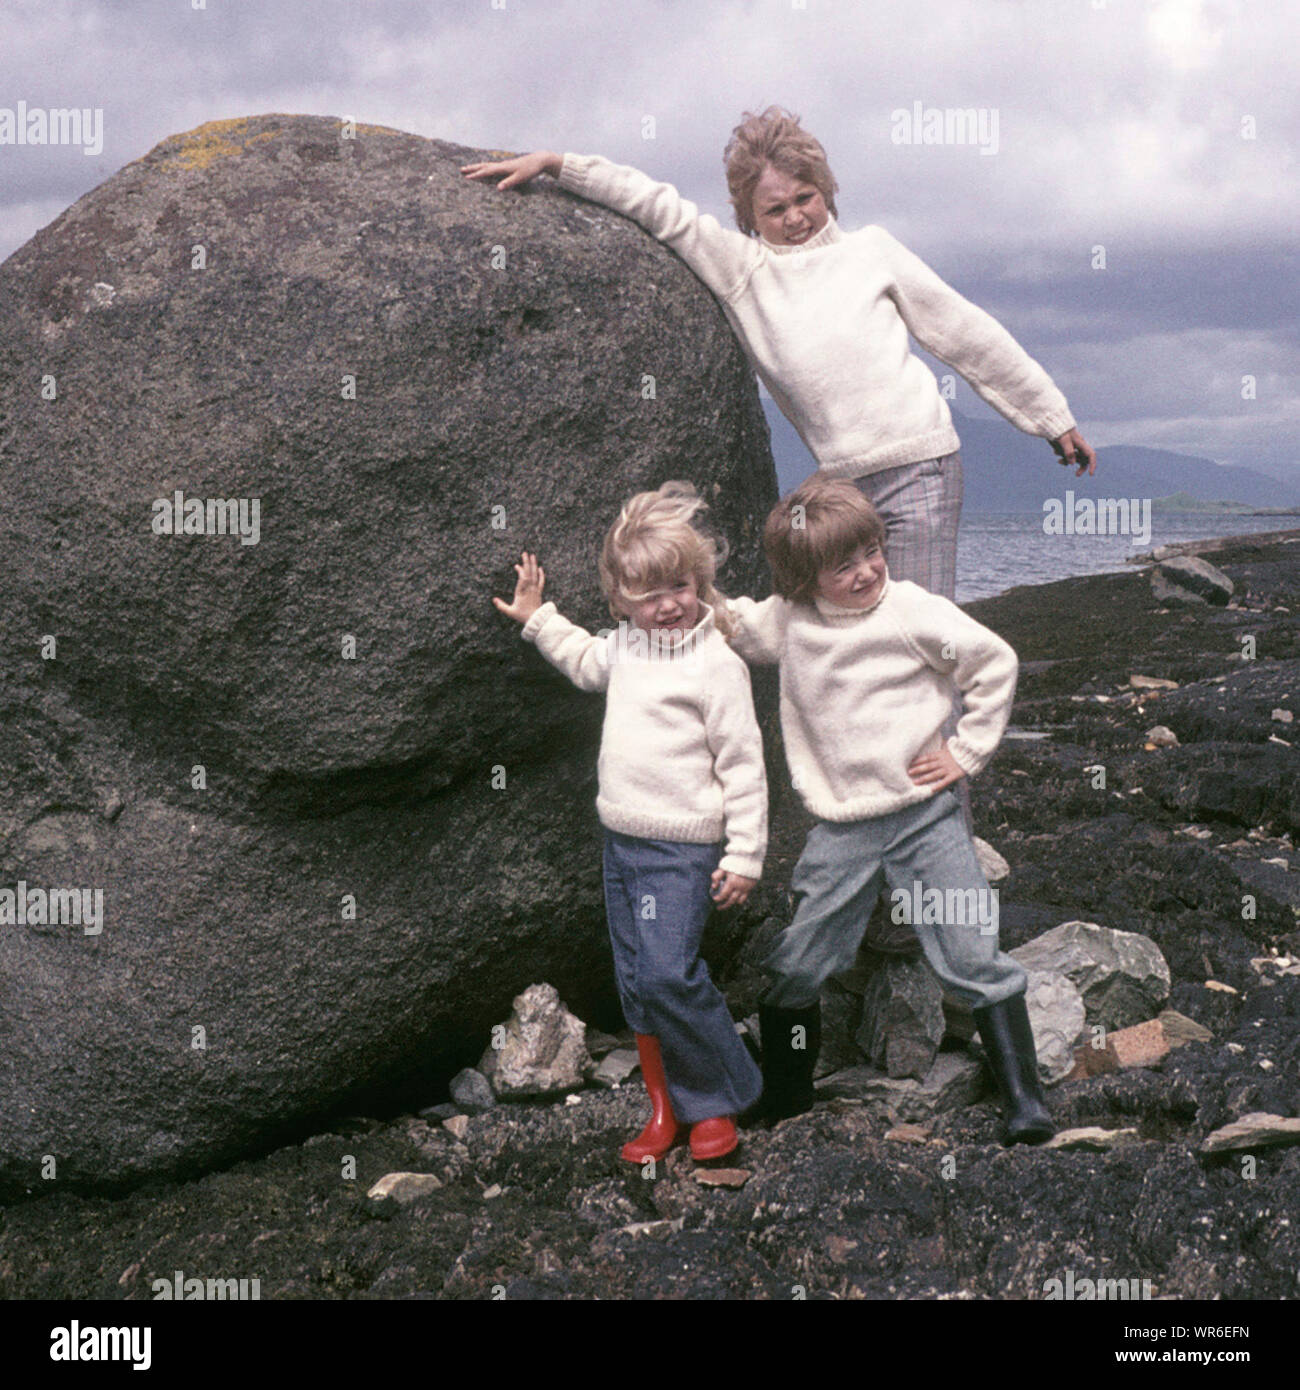 Historical archival 1970s modello rilasciato famiglia turismo vacanza in Scozia tre bambini dalla stessa posa famiglia indossando 70s matching Aran moda jumper cercando di spingere masso accanto al lago ventoso freddo come eravamo in Highlands scozzesi UK Foto Stock